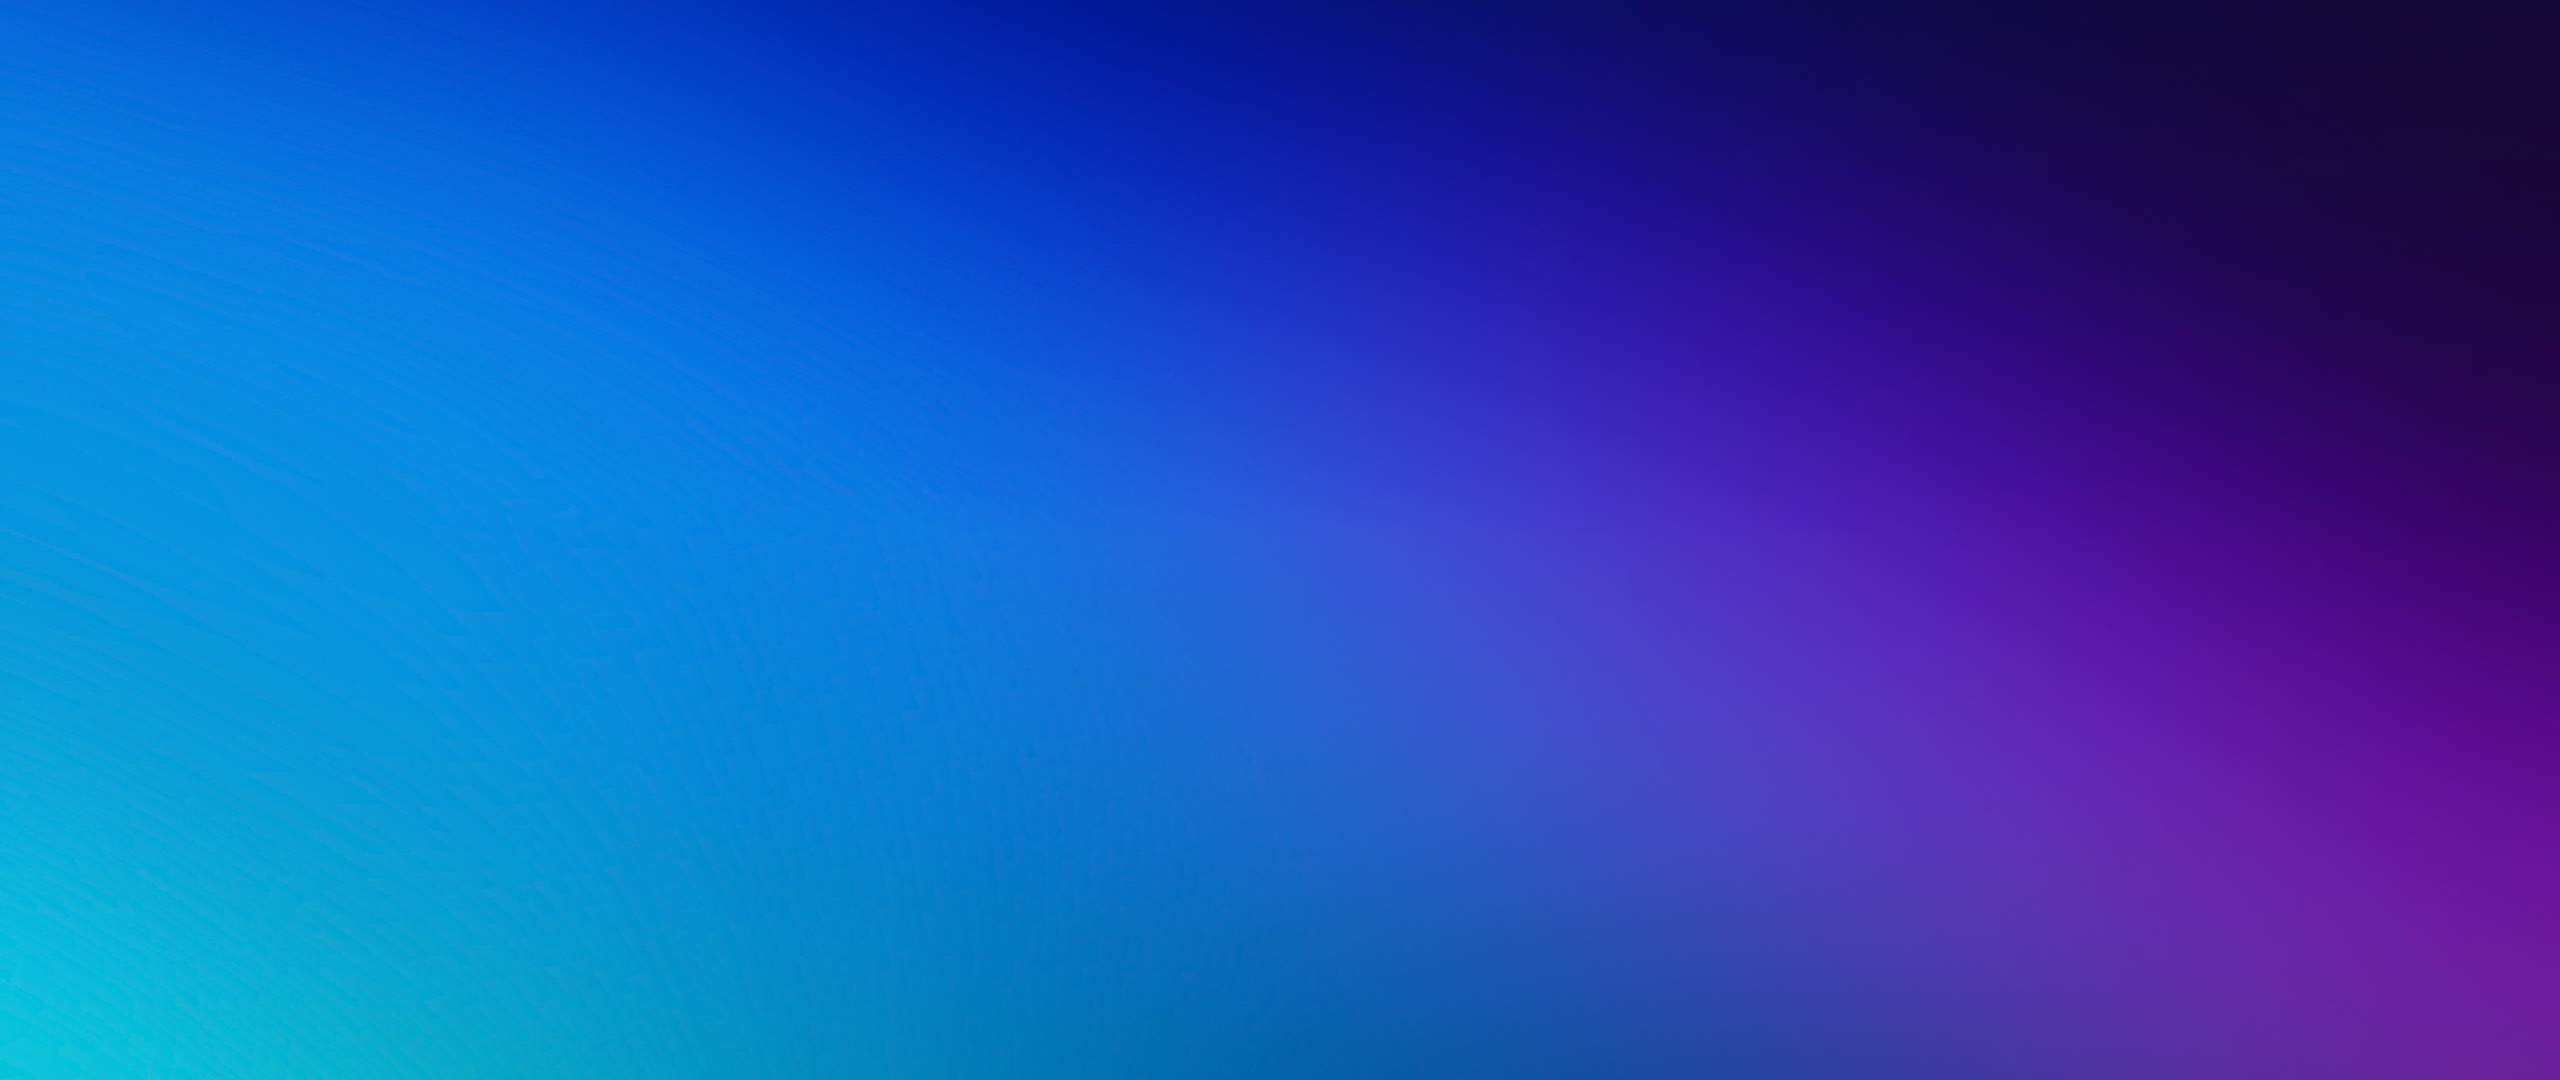 2560x1080 Green Blue Purple Blur 4k Wallpaper,2560x1080 Resolution HD ...